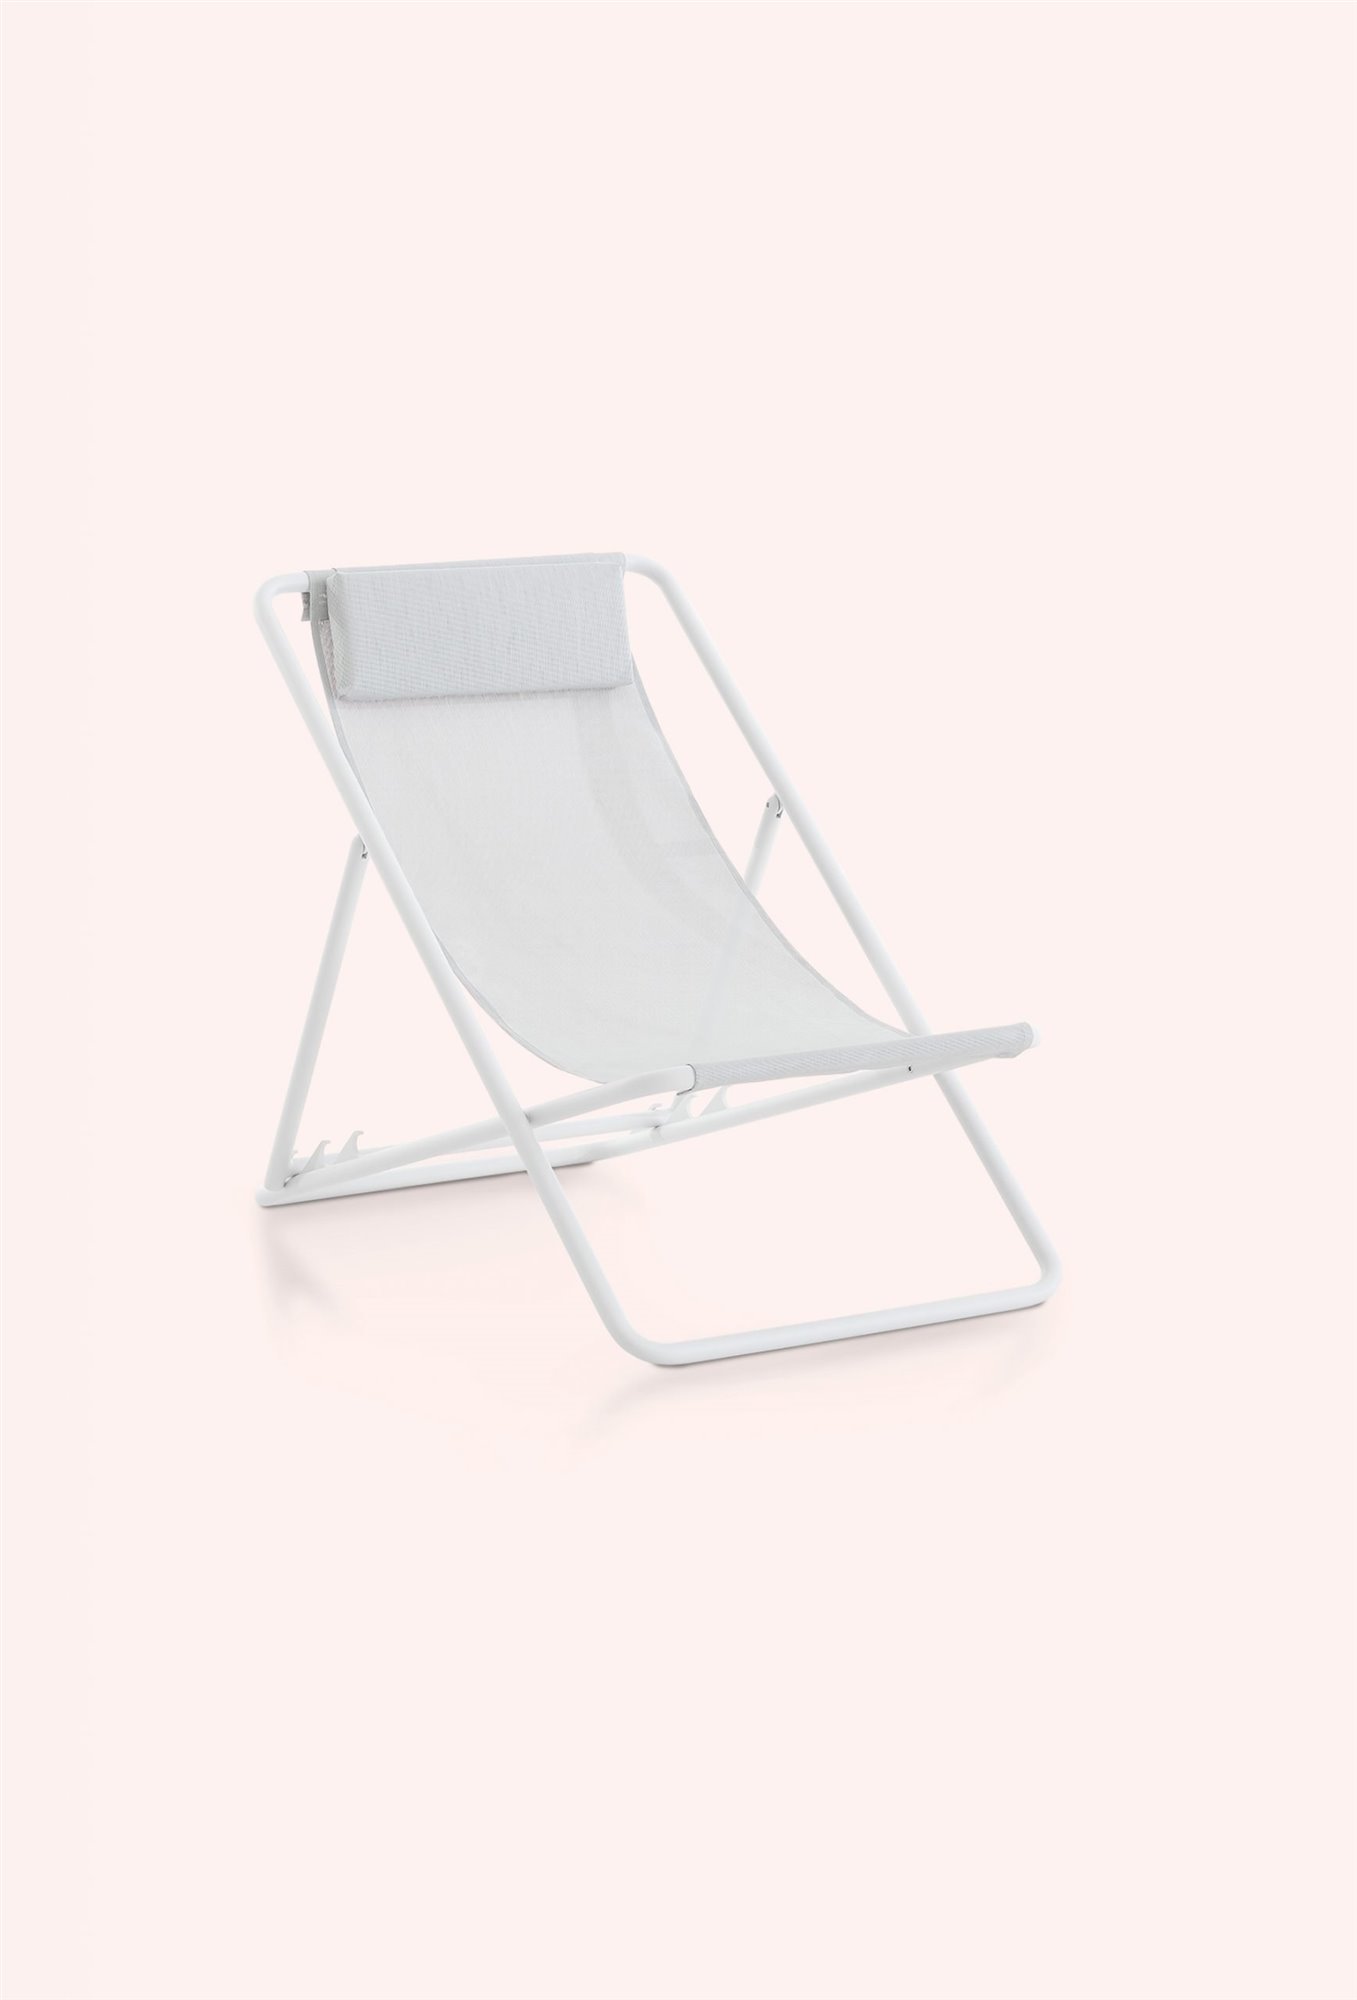 trip-deckchair-45-white-scaled